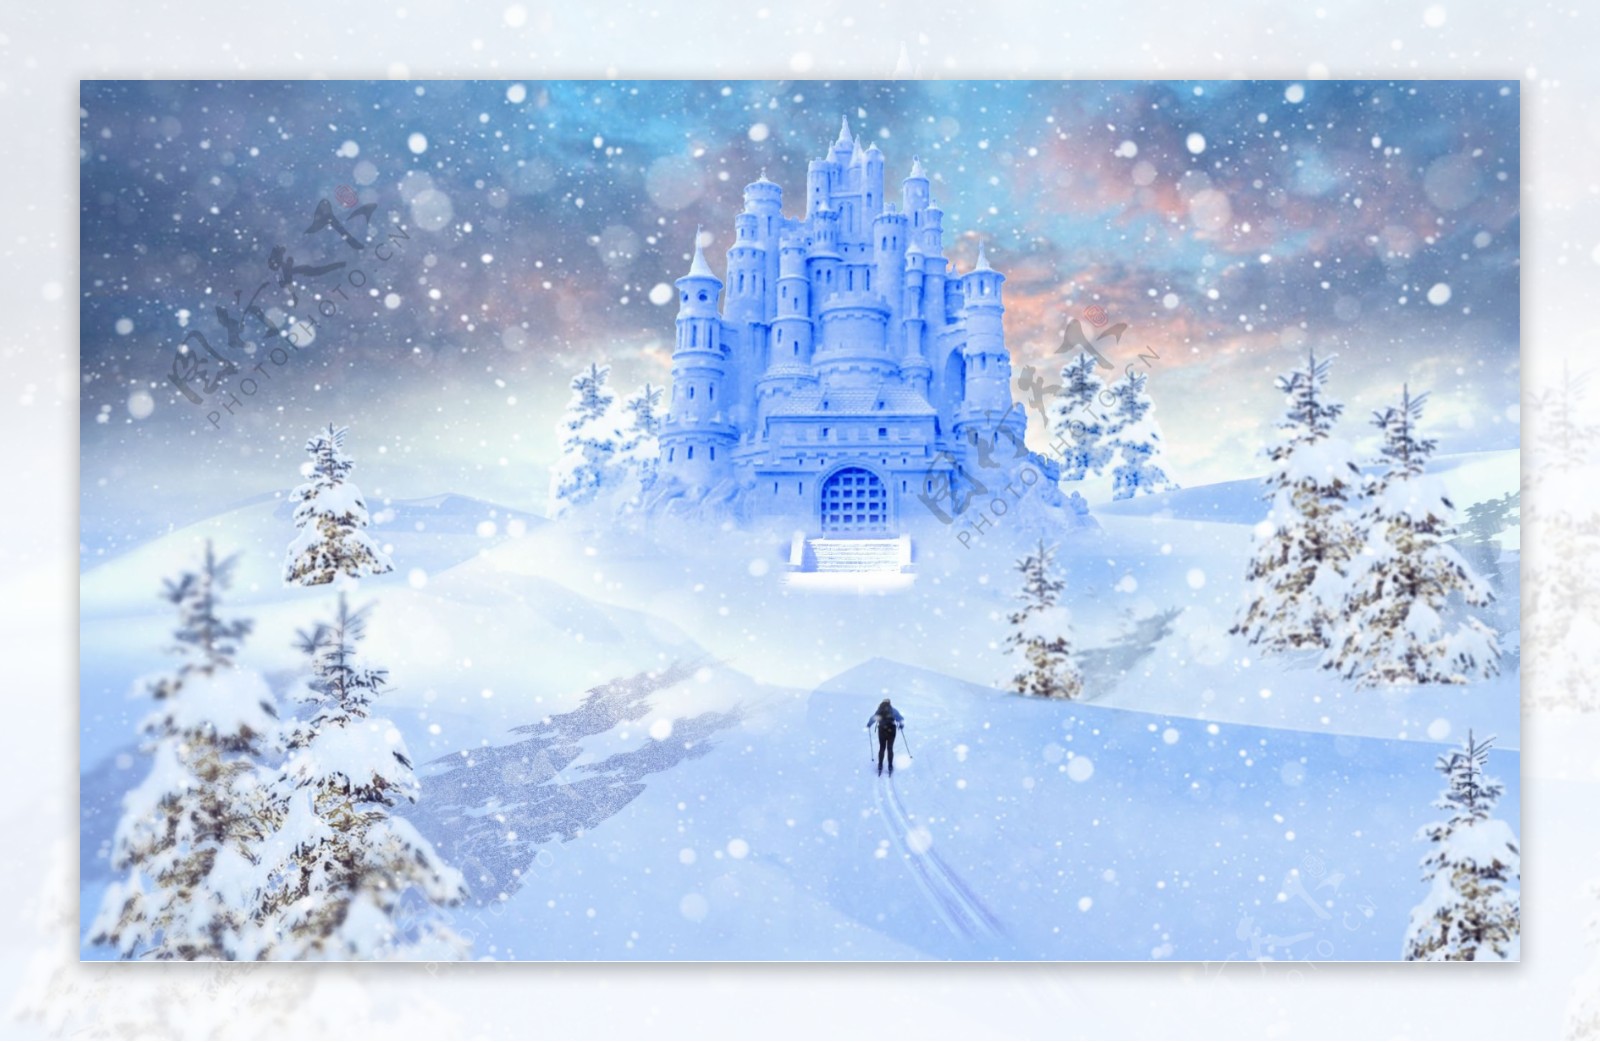 蓝色浪漫城堡冬季雪景合成图片的PSD文件